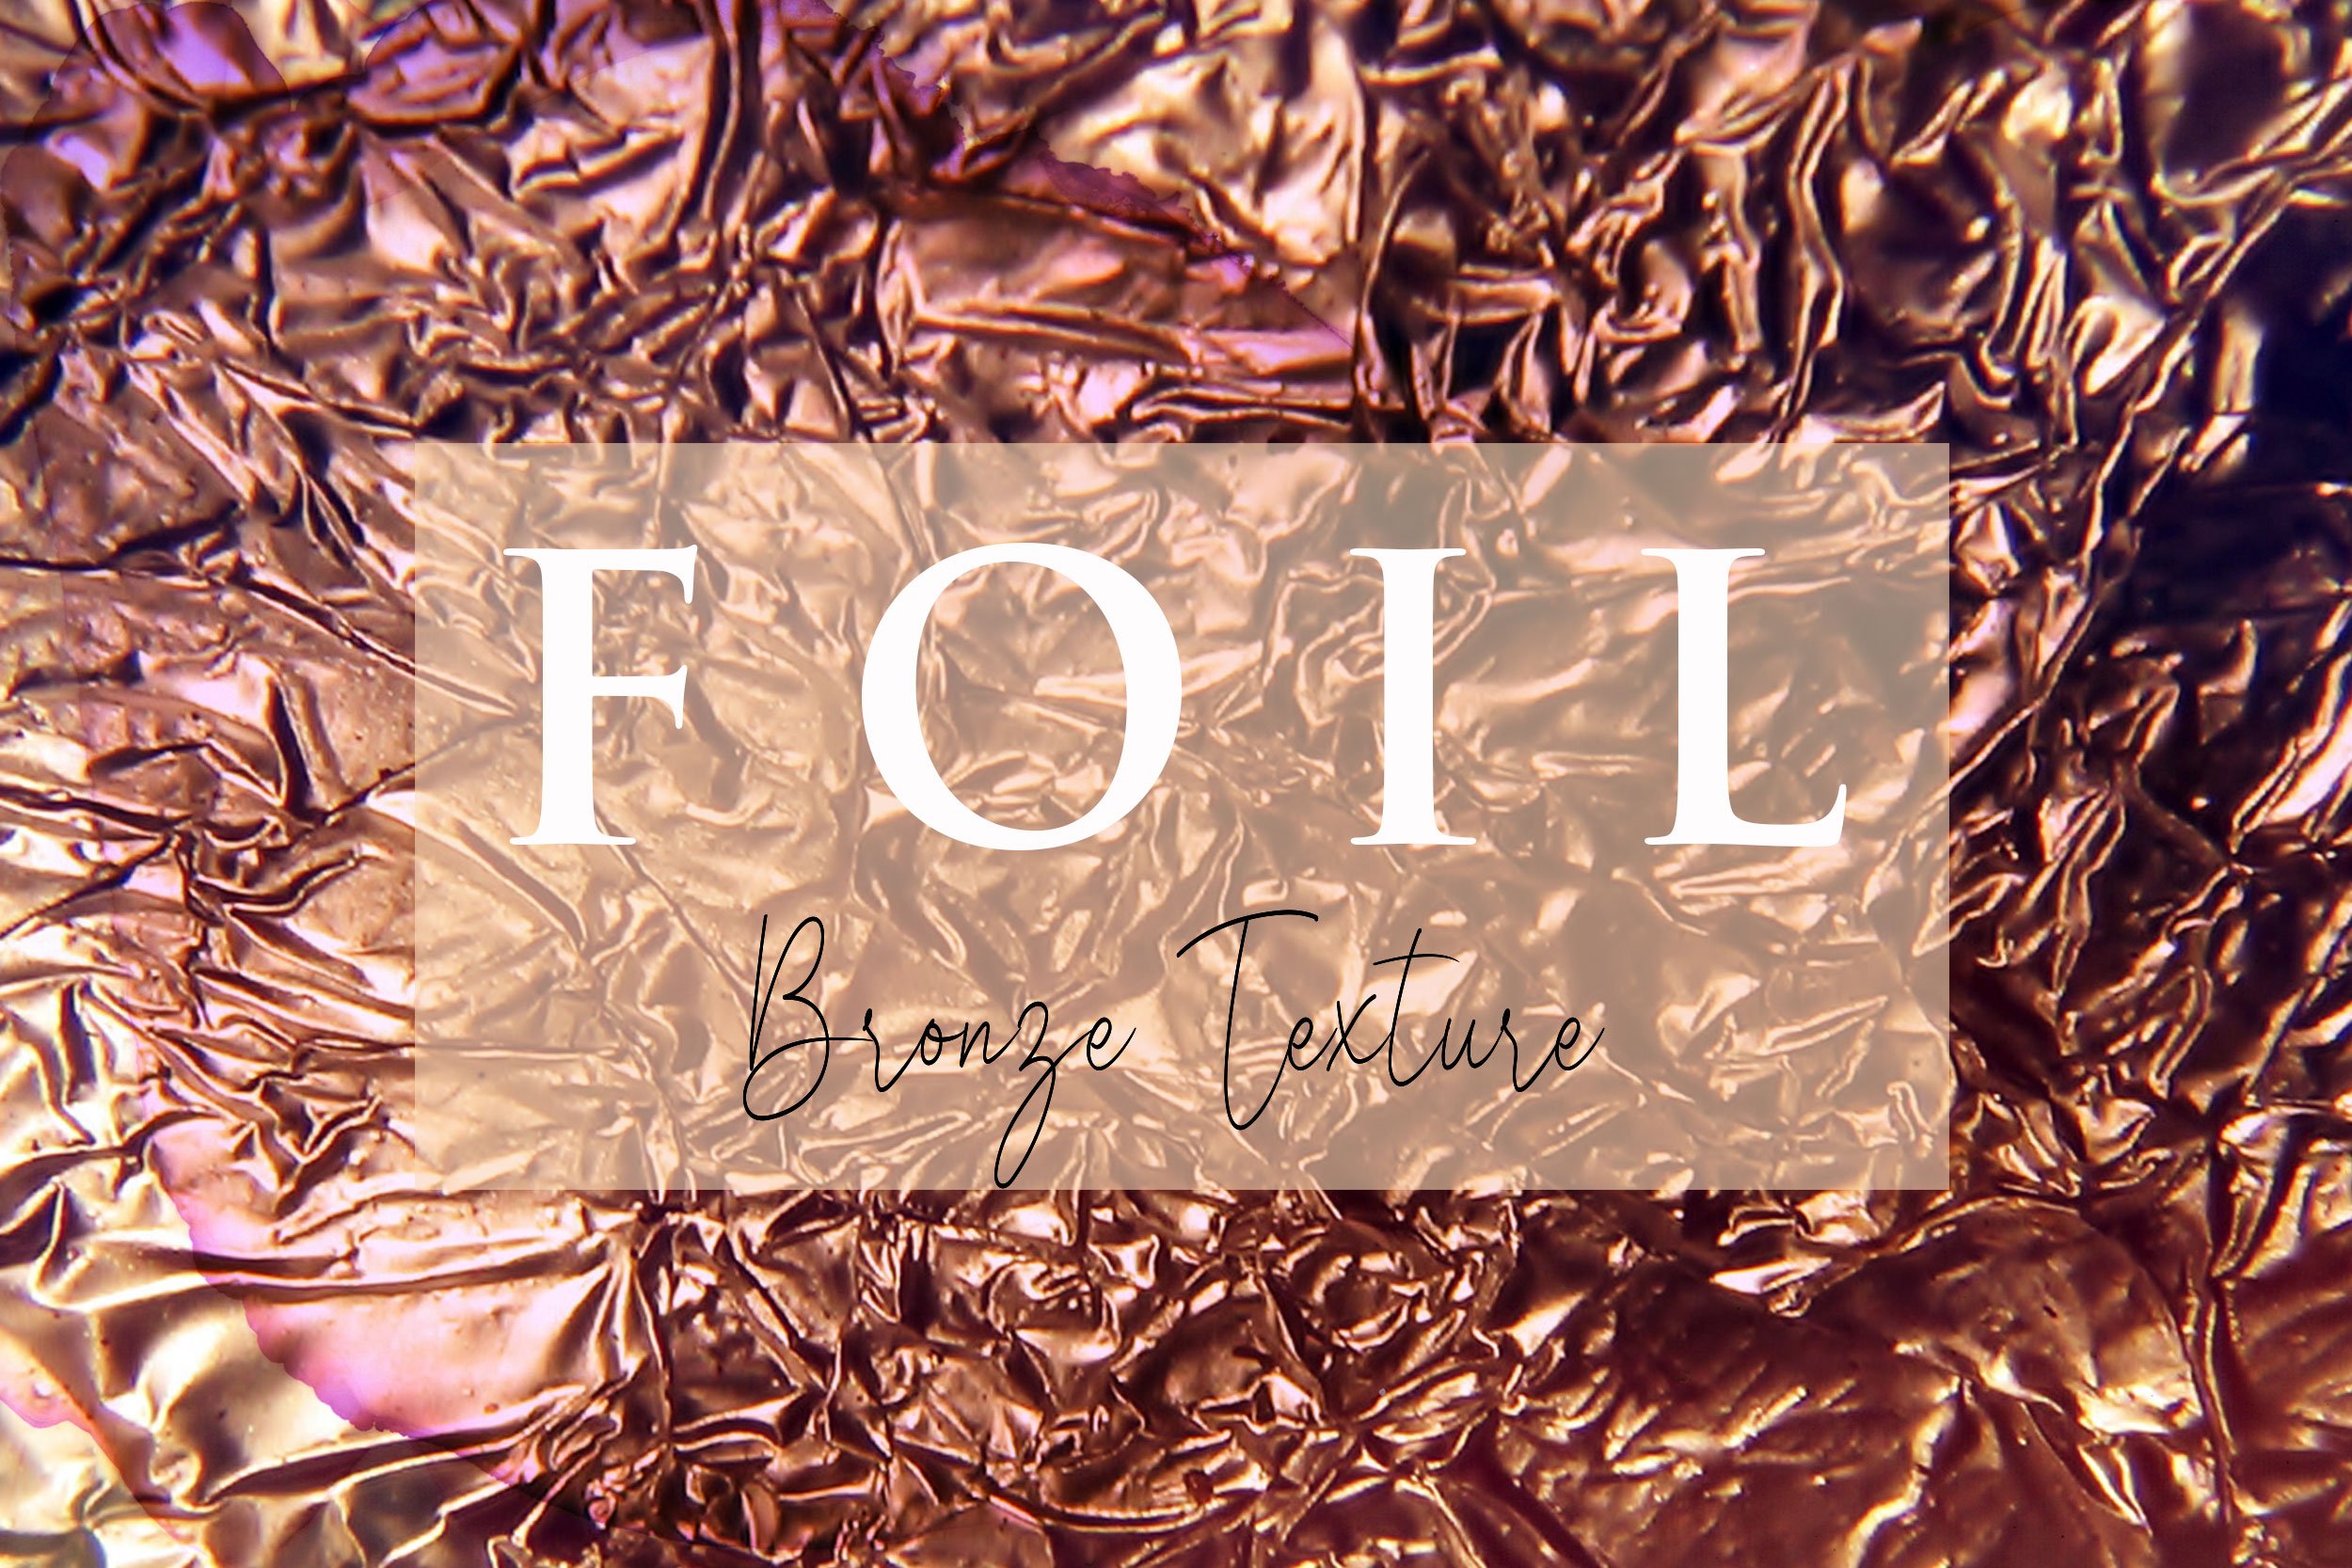 Bronze & Glitter Foil Textures